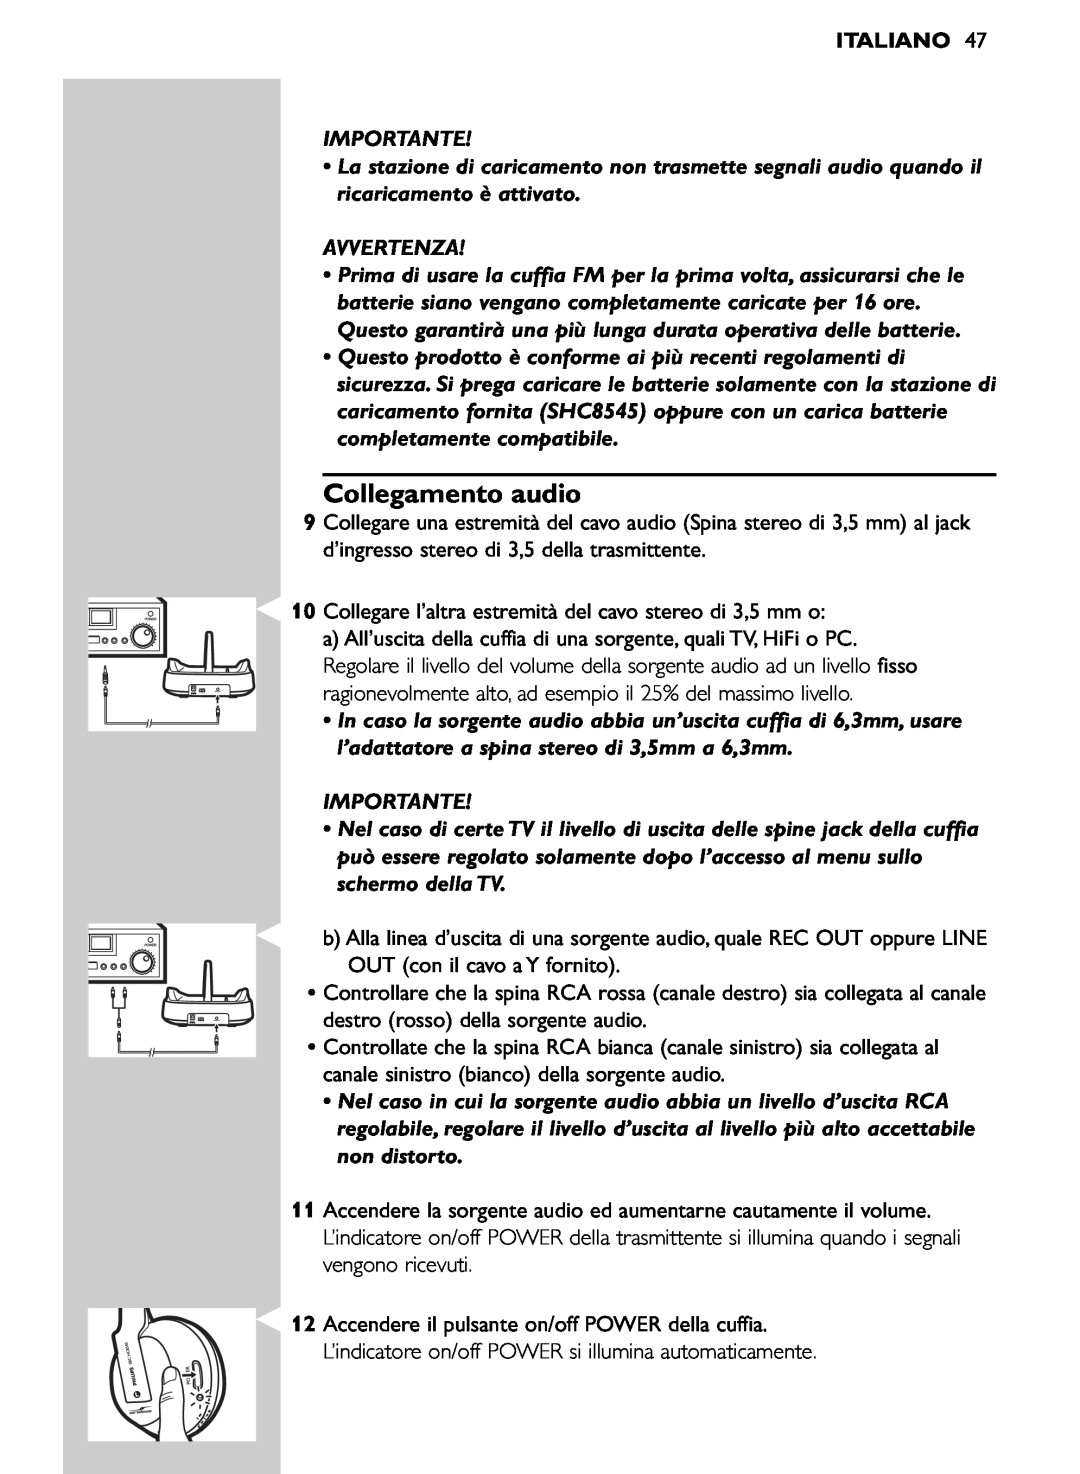 Philips SHC8545/00 manual Collegamento audio, Italiano, Importante, Avvertenza 